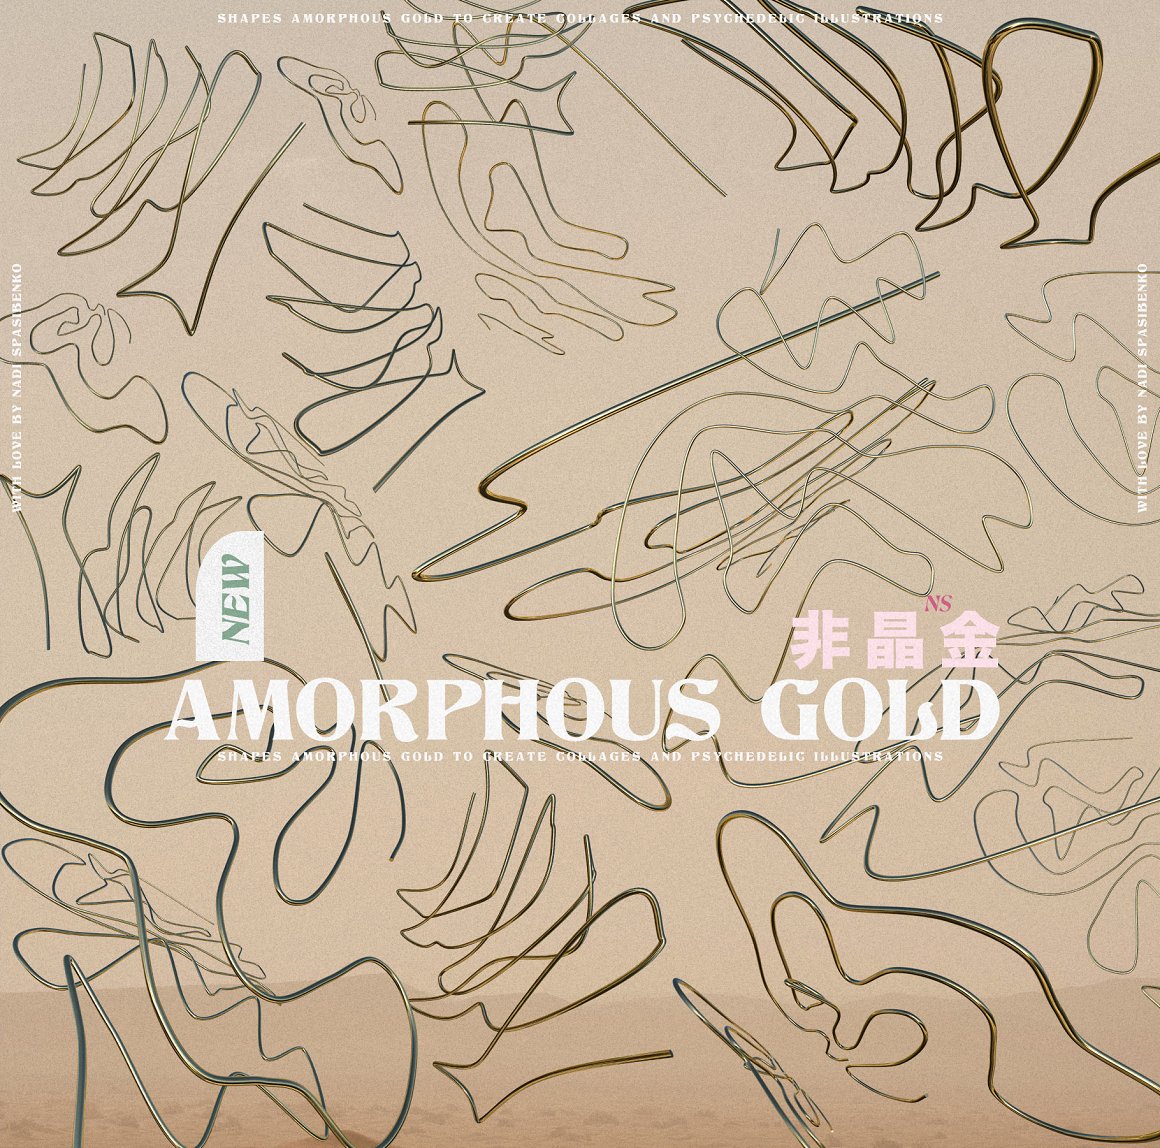 抽象艺术酸性液态3d迷幻黄金形状背景海报PBG素材包 Amorphous Liquid Gold 图片素材 第10张